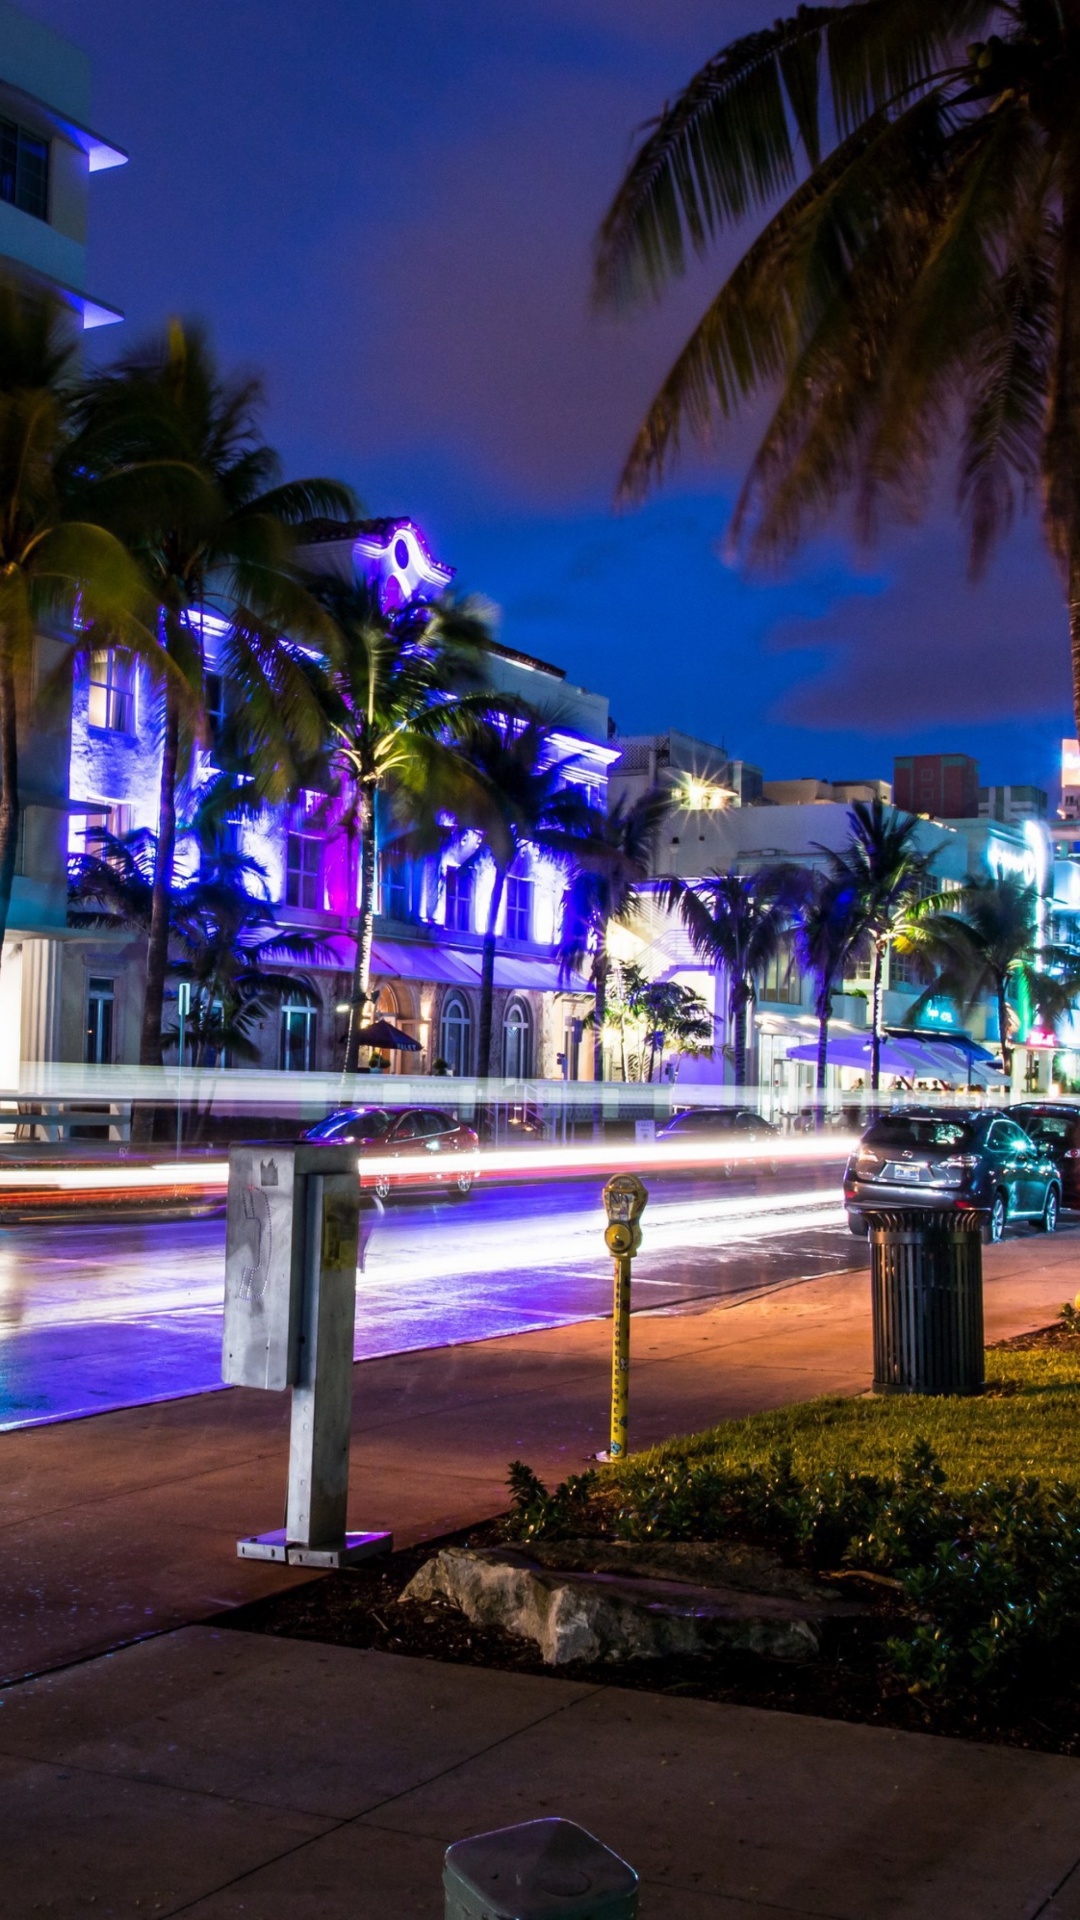 Florida, Miami Evening screenshot #1 1080x1920